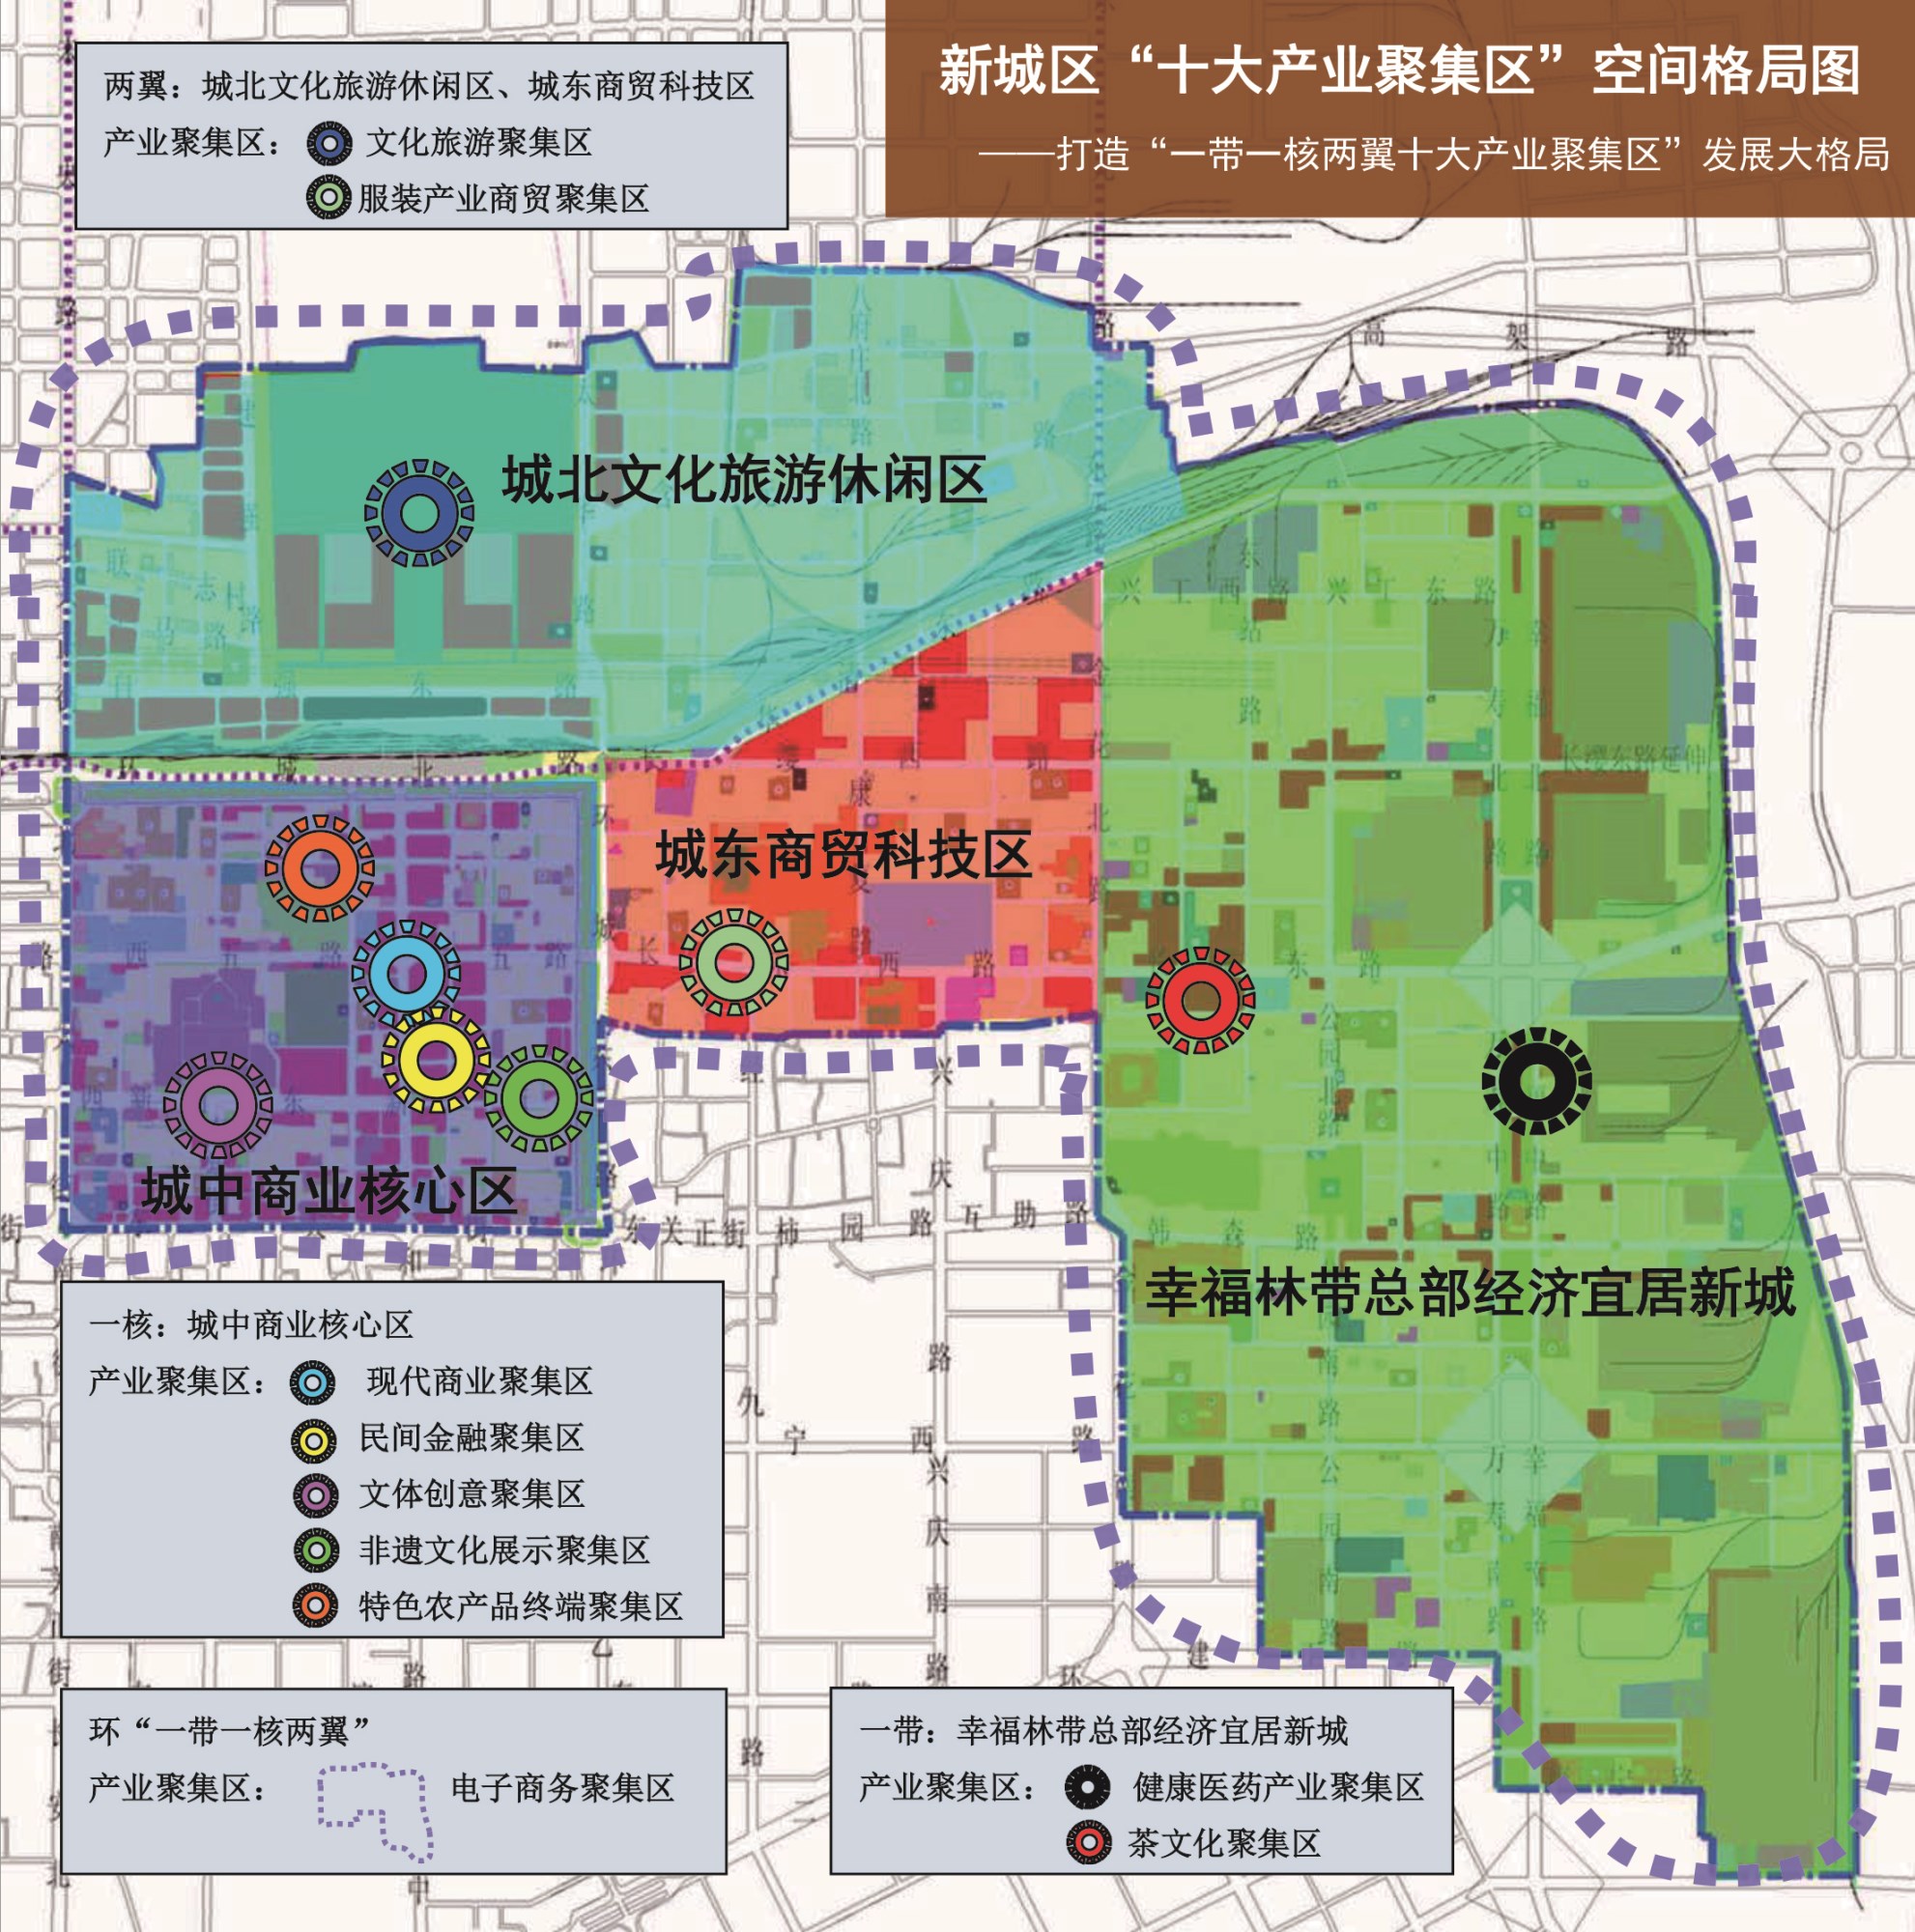 西安市新城区“十大产业聚集区”策划